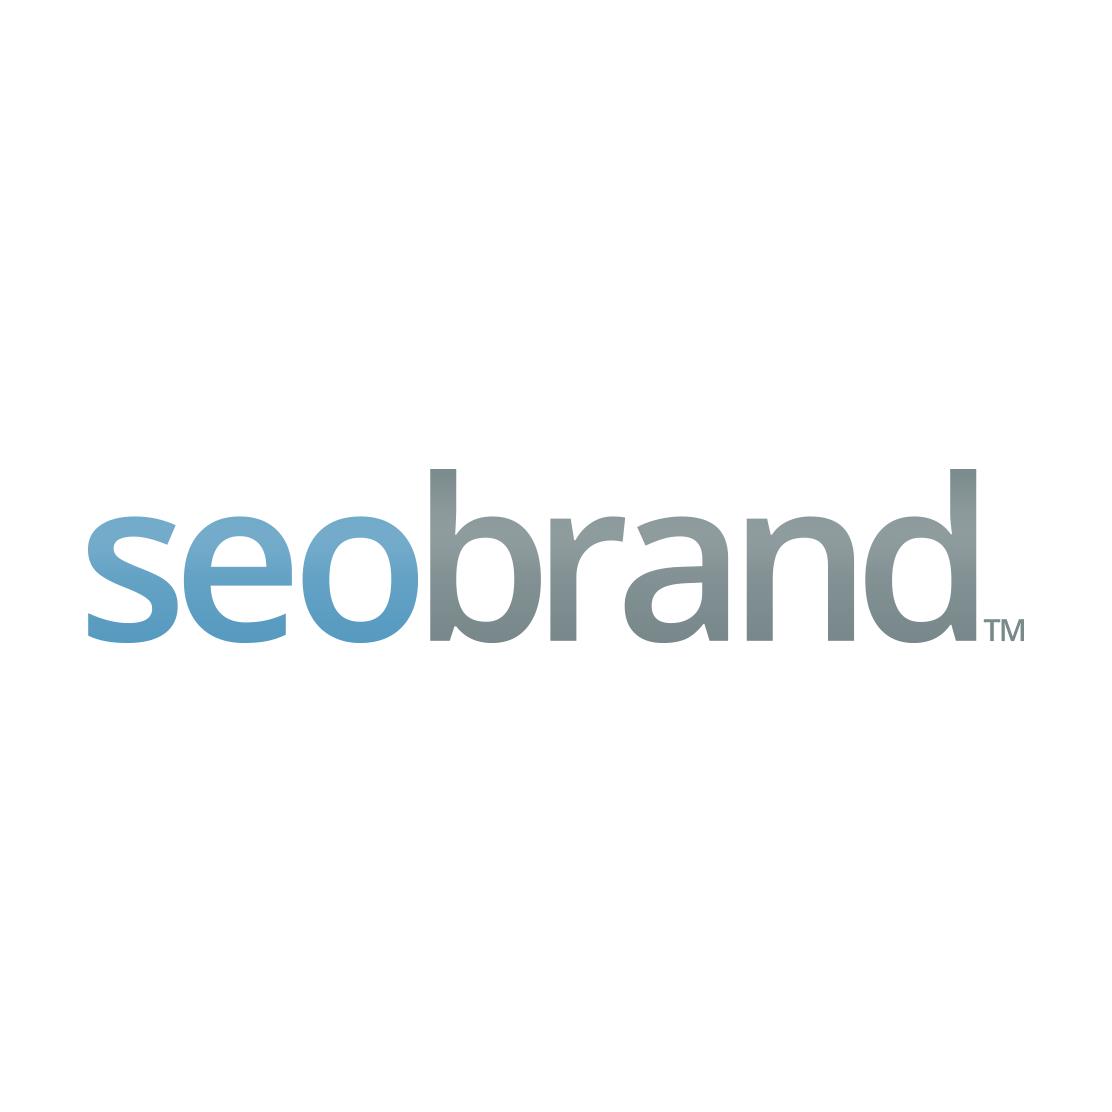 Best Philadelphia SEO Firm Logo: SEO Brand